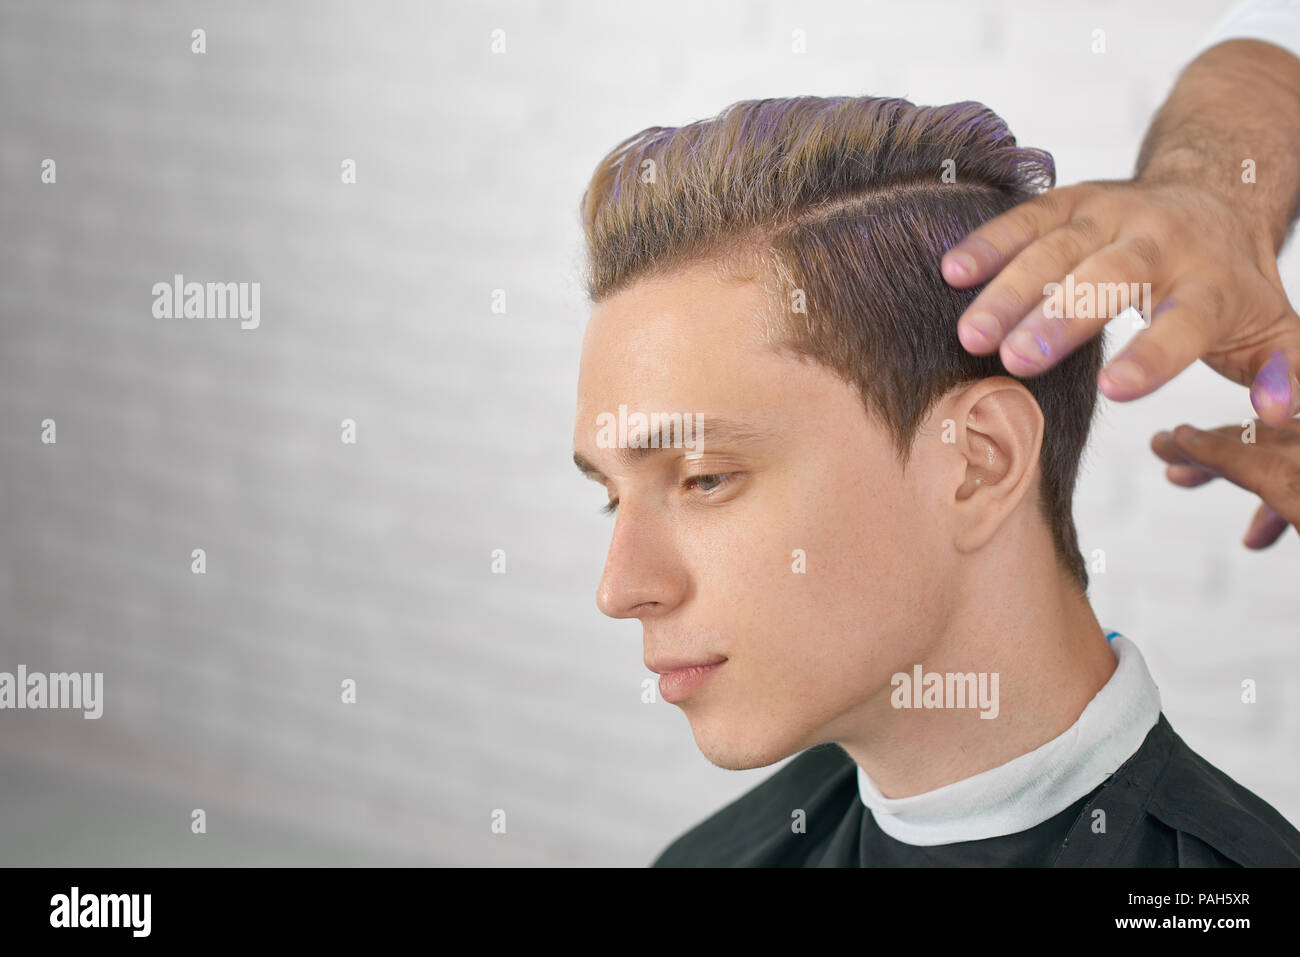 Junge männliche Modell warten auf neue Frisur mit lila Haare färben. Friseur Hände tun, stilvolle Farbgebung für schöner Junge. Arbeiten am weißen Stein studio Hintergrund. Stockfoto